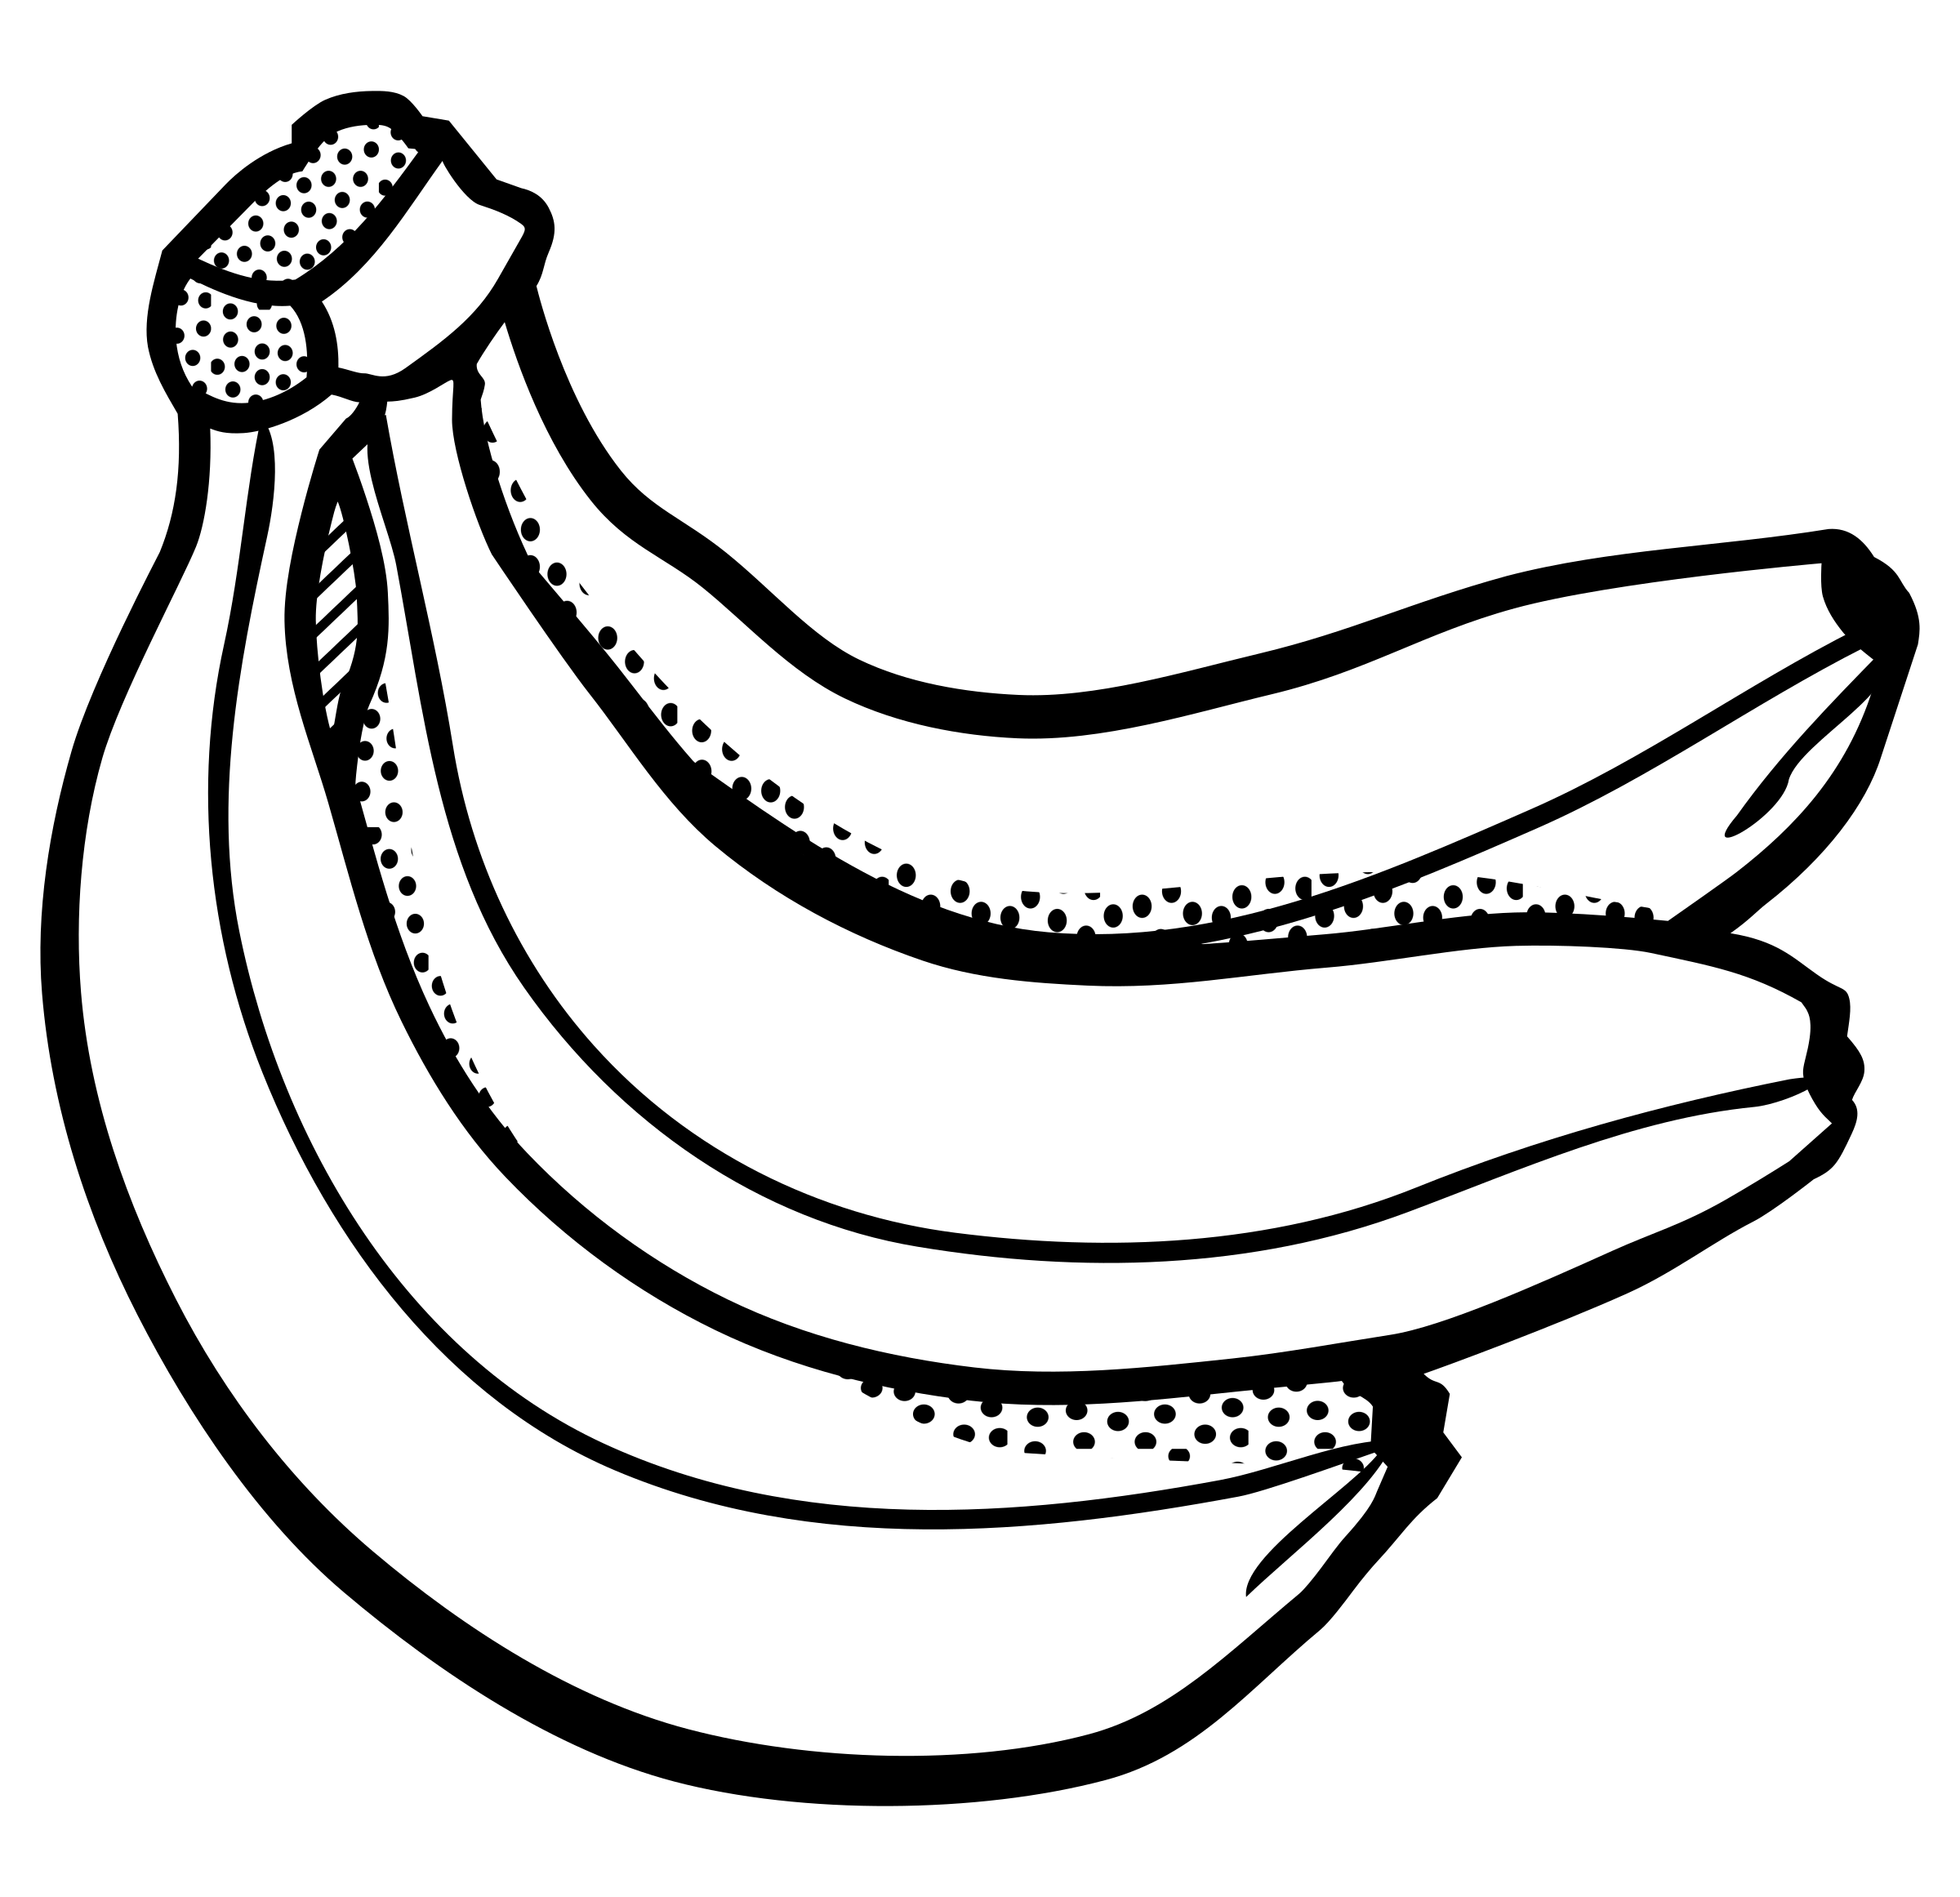 Free Banana Clip Art Black And White, Download Free Banana Clip Art ...